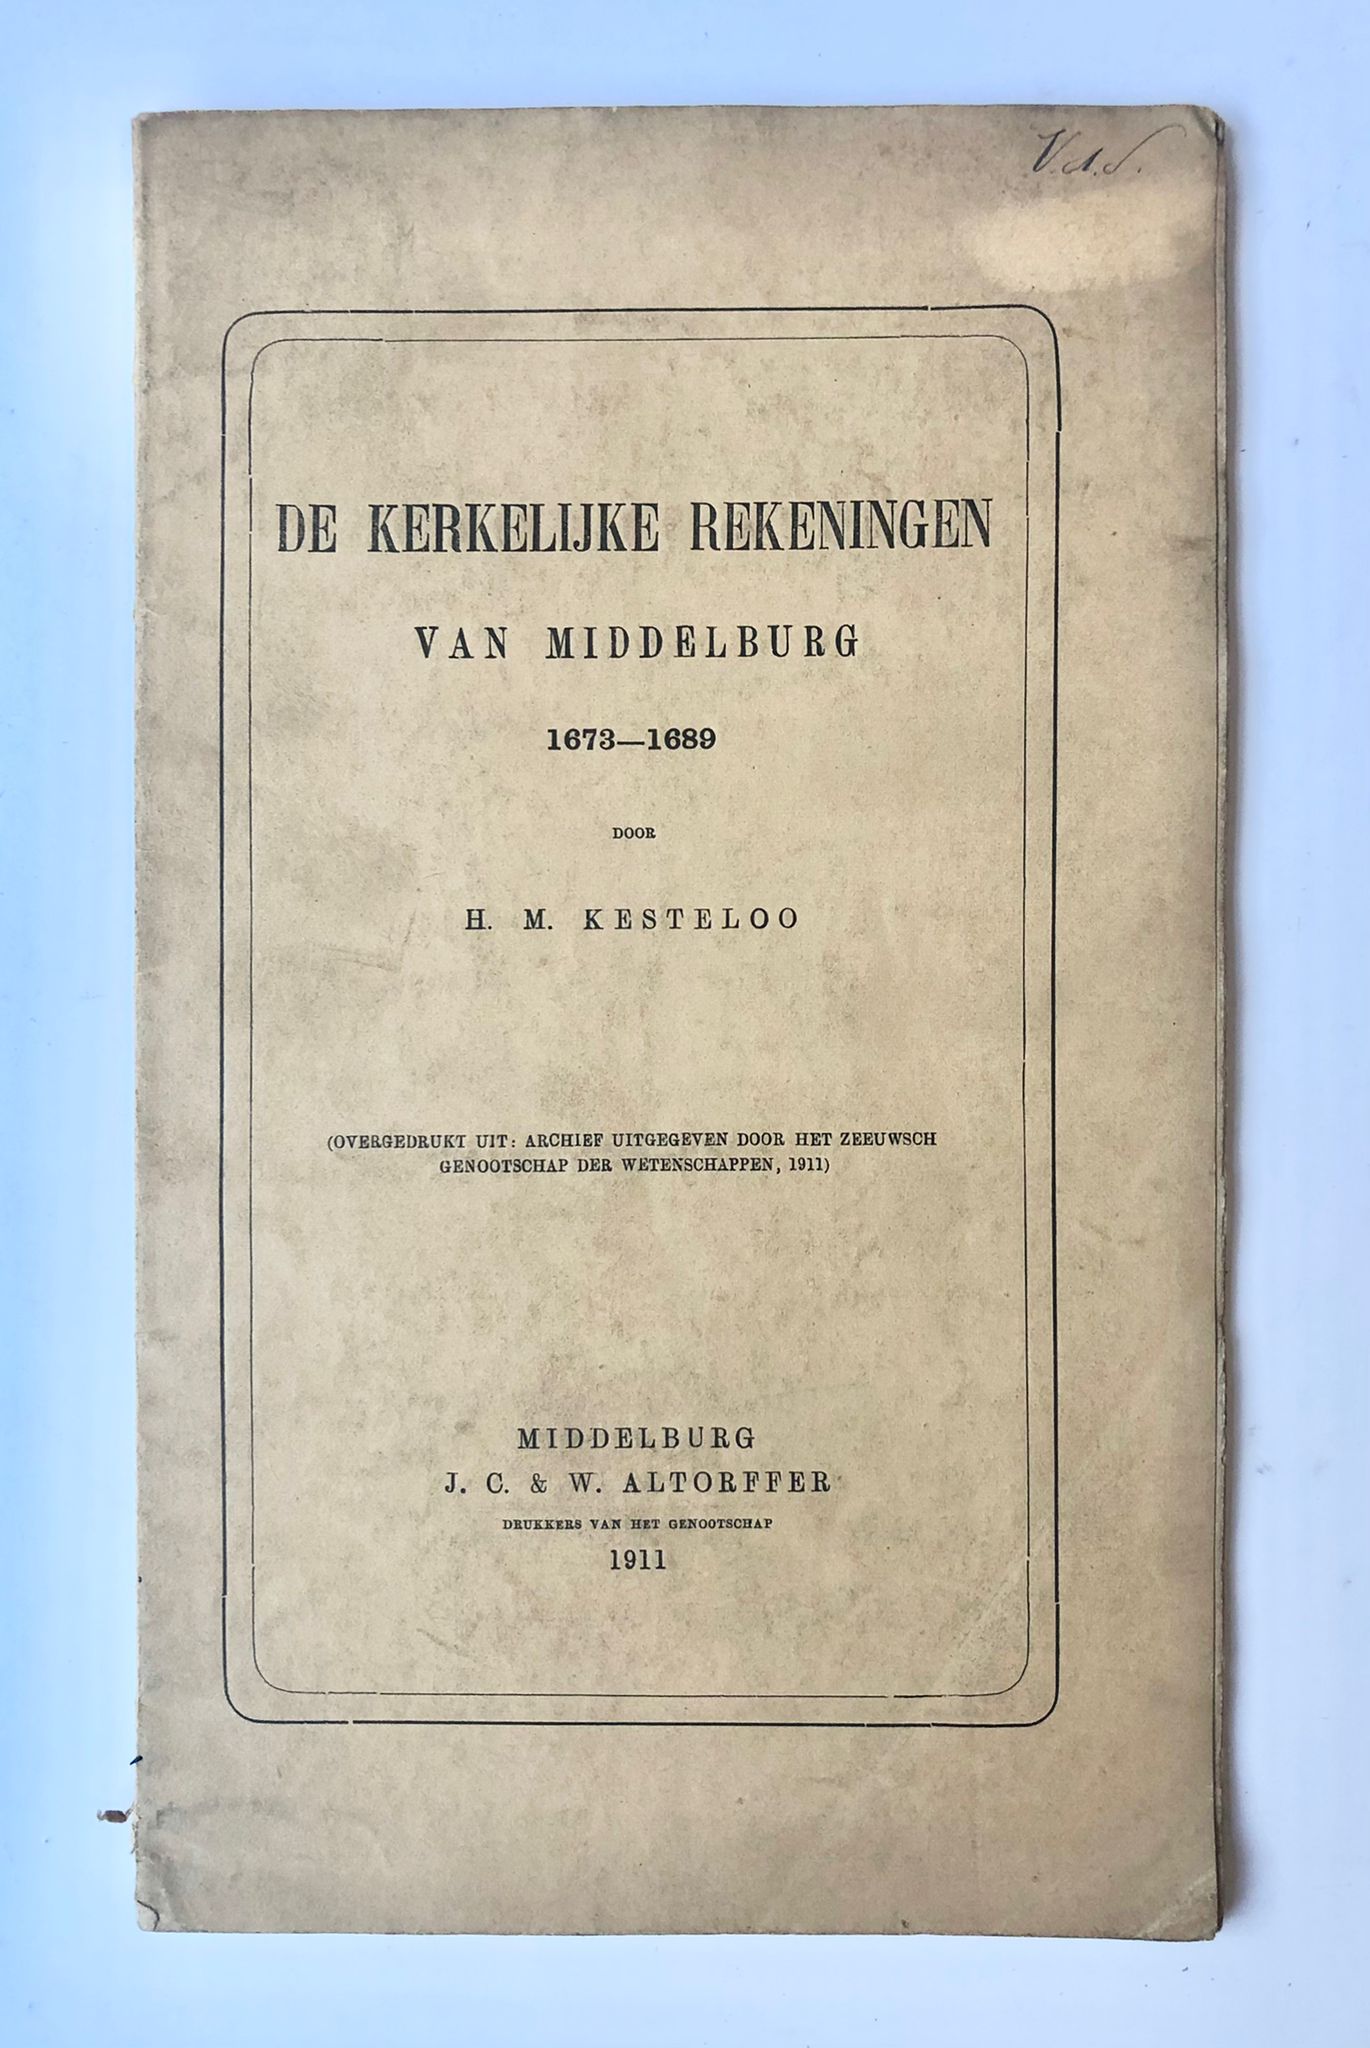 [Middelburg, Zeeland] De Kerkelijke rekeningen van Middelburg 1673-1689, Door H. M. Kesteloo, (Overgedrukt uit: archief uitgegeven door het Zeeuwsch genootschap der Wetenschappen, 1911), J. C. & W. Altorffer, Middelburg, 1911, 33 pp.